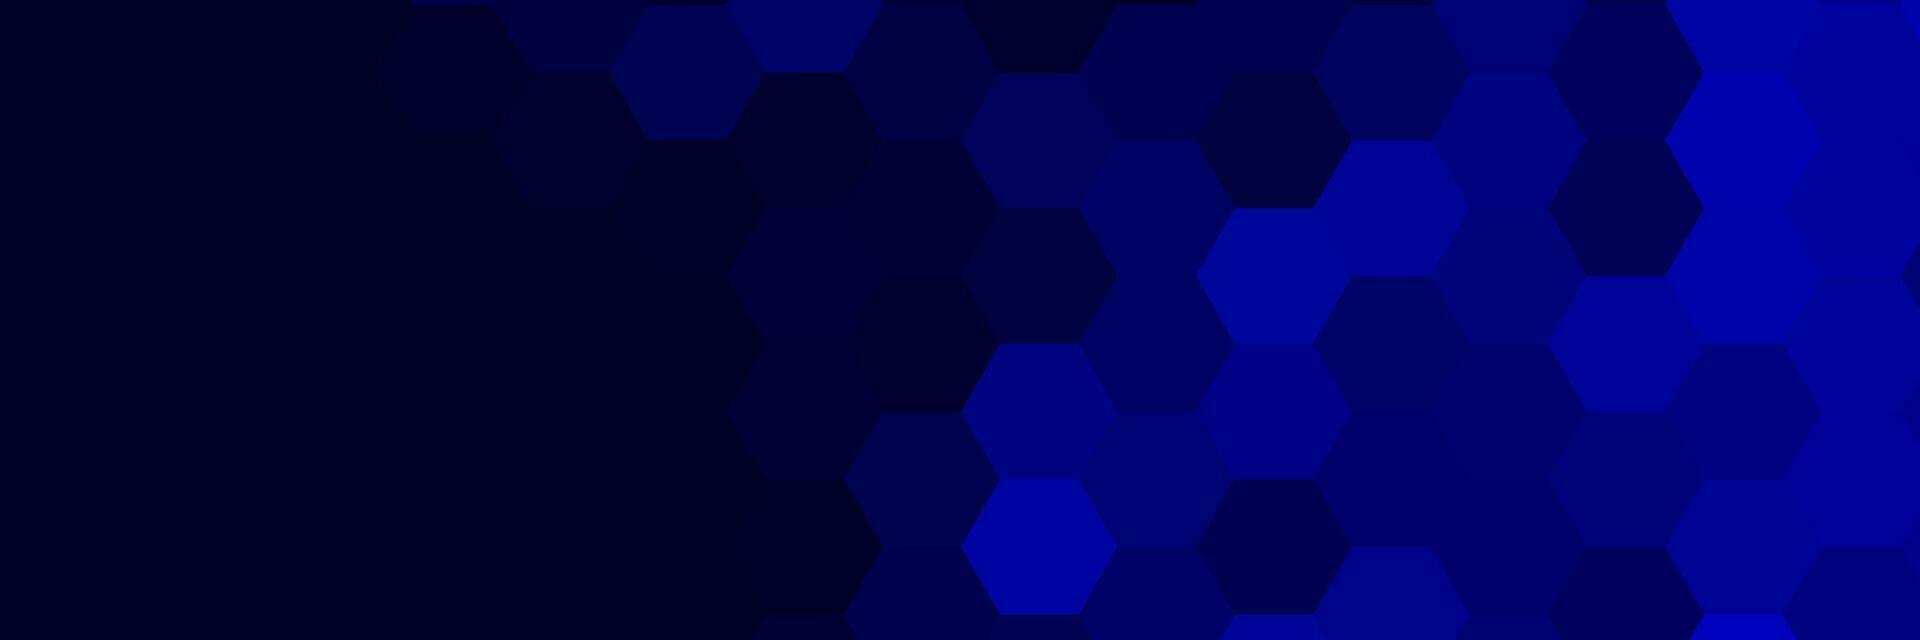 modern elegant abstract blauw achtergrond vector